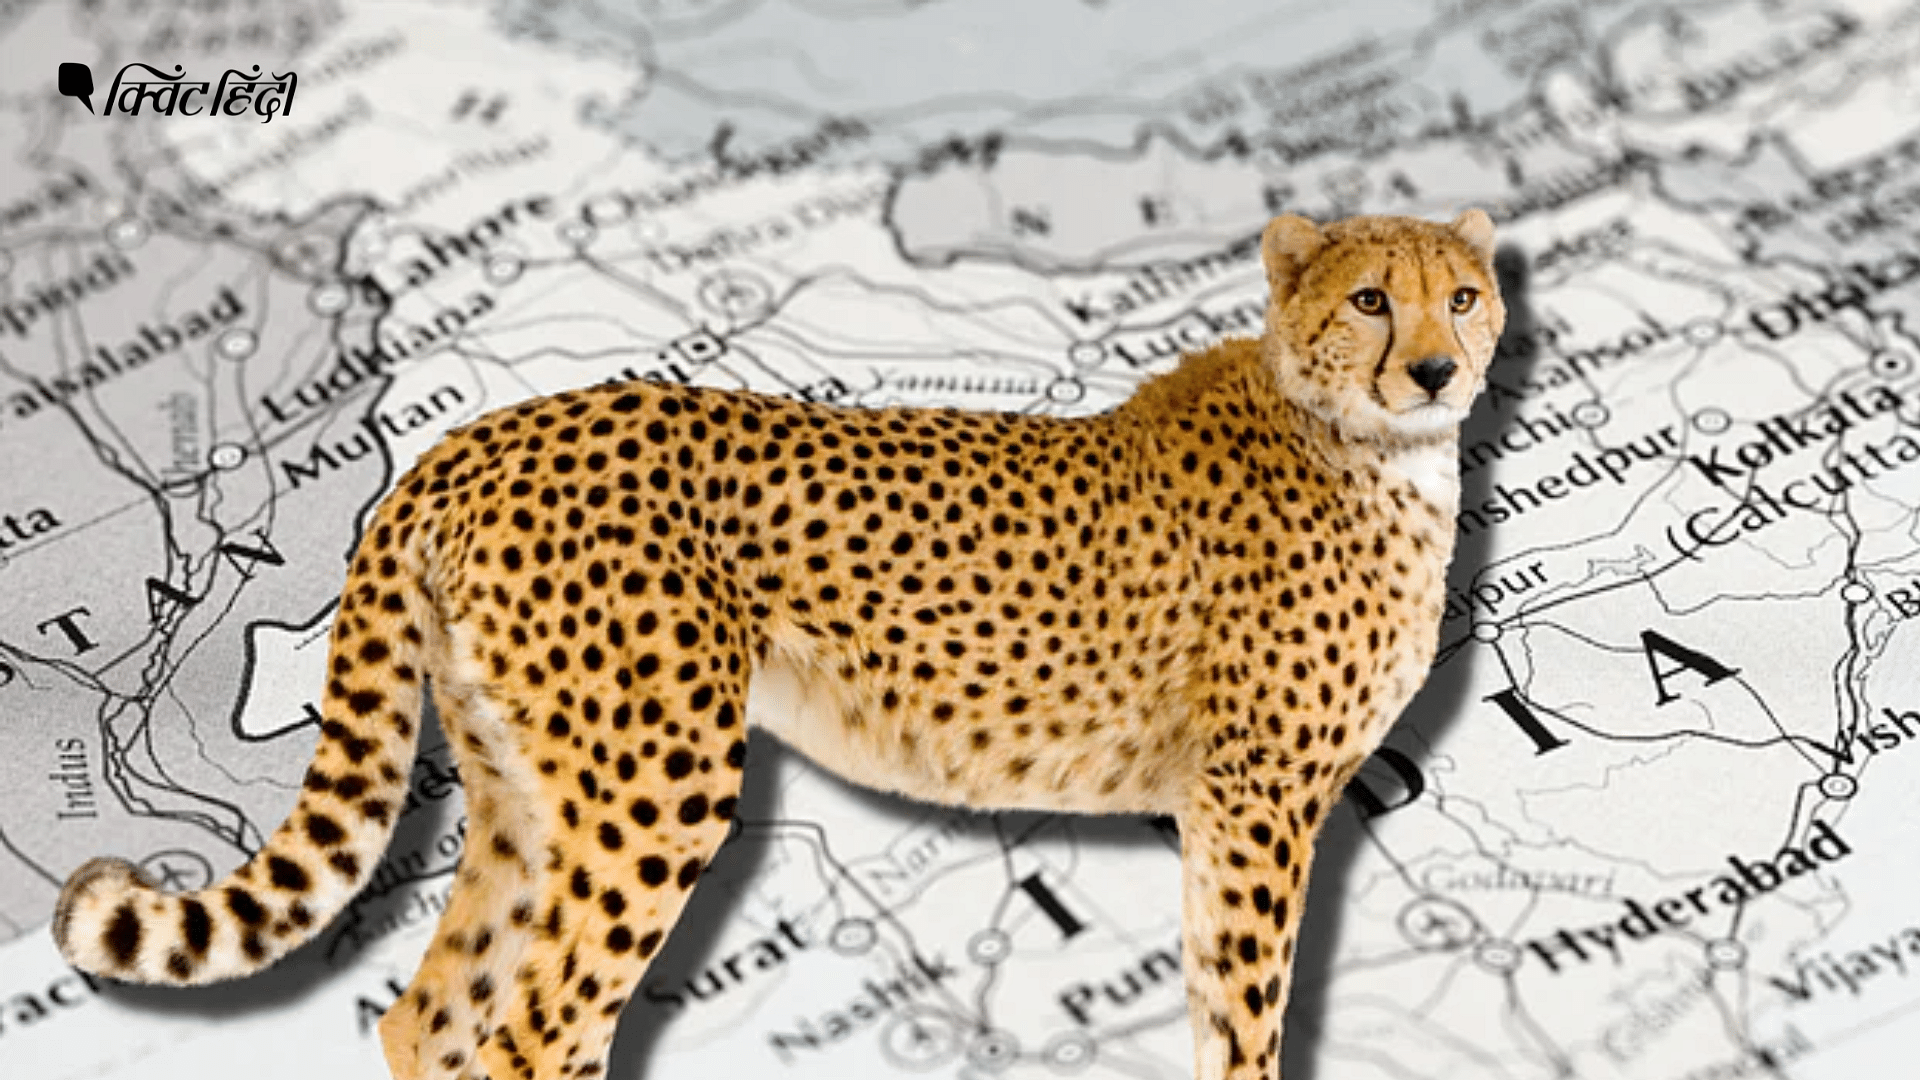 <div class="paragraphs"><p>Project cheetah: भारत में चीतों के लुप्त होने से वापस लाए जाने तक कब क्या हुआ?</p></div>